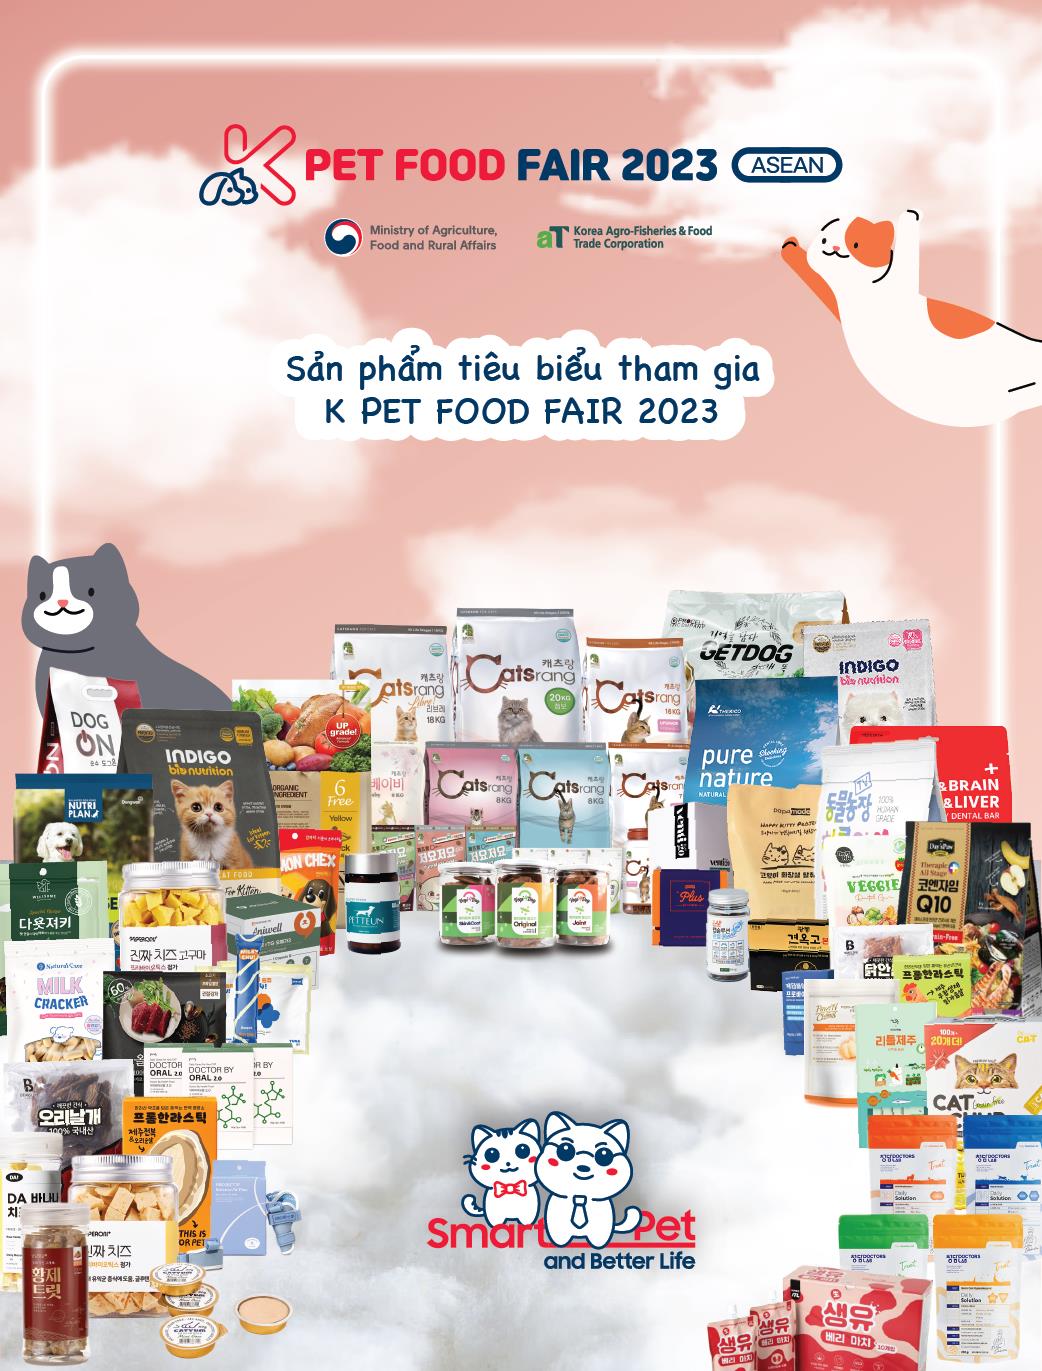 K-Pet Food Fair 2023 - Chương trình kết nối giao thương 1:1 hấp dẫn giữa doanh nghiệp Hàn Quốc và Việt Nam - Ảnh 2.